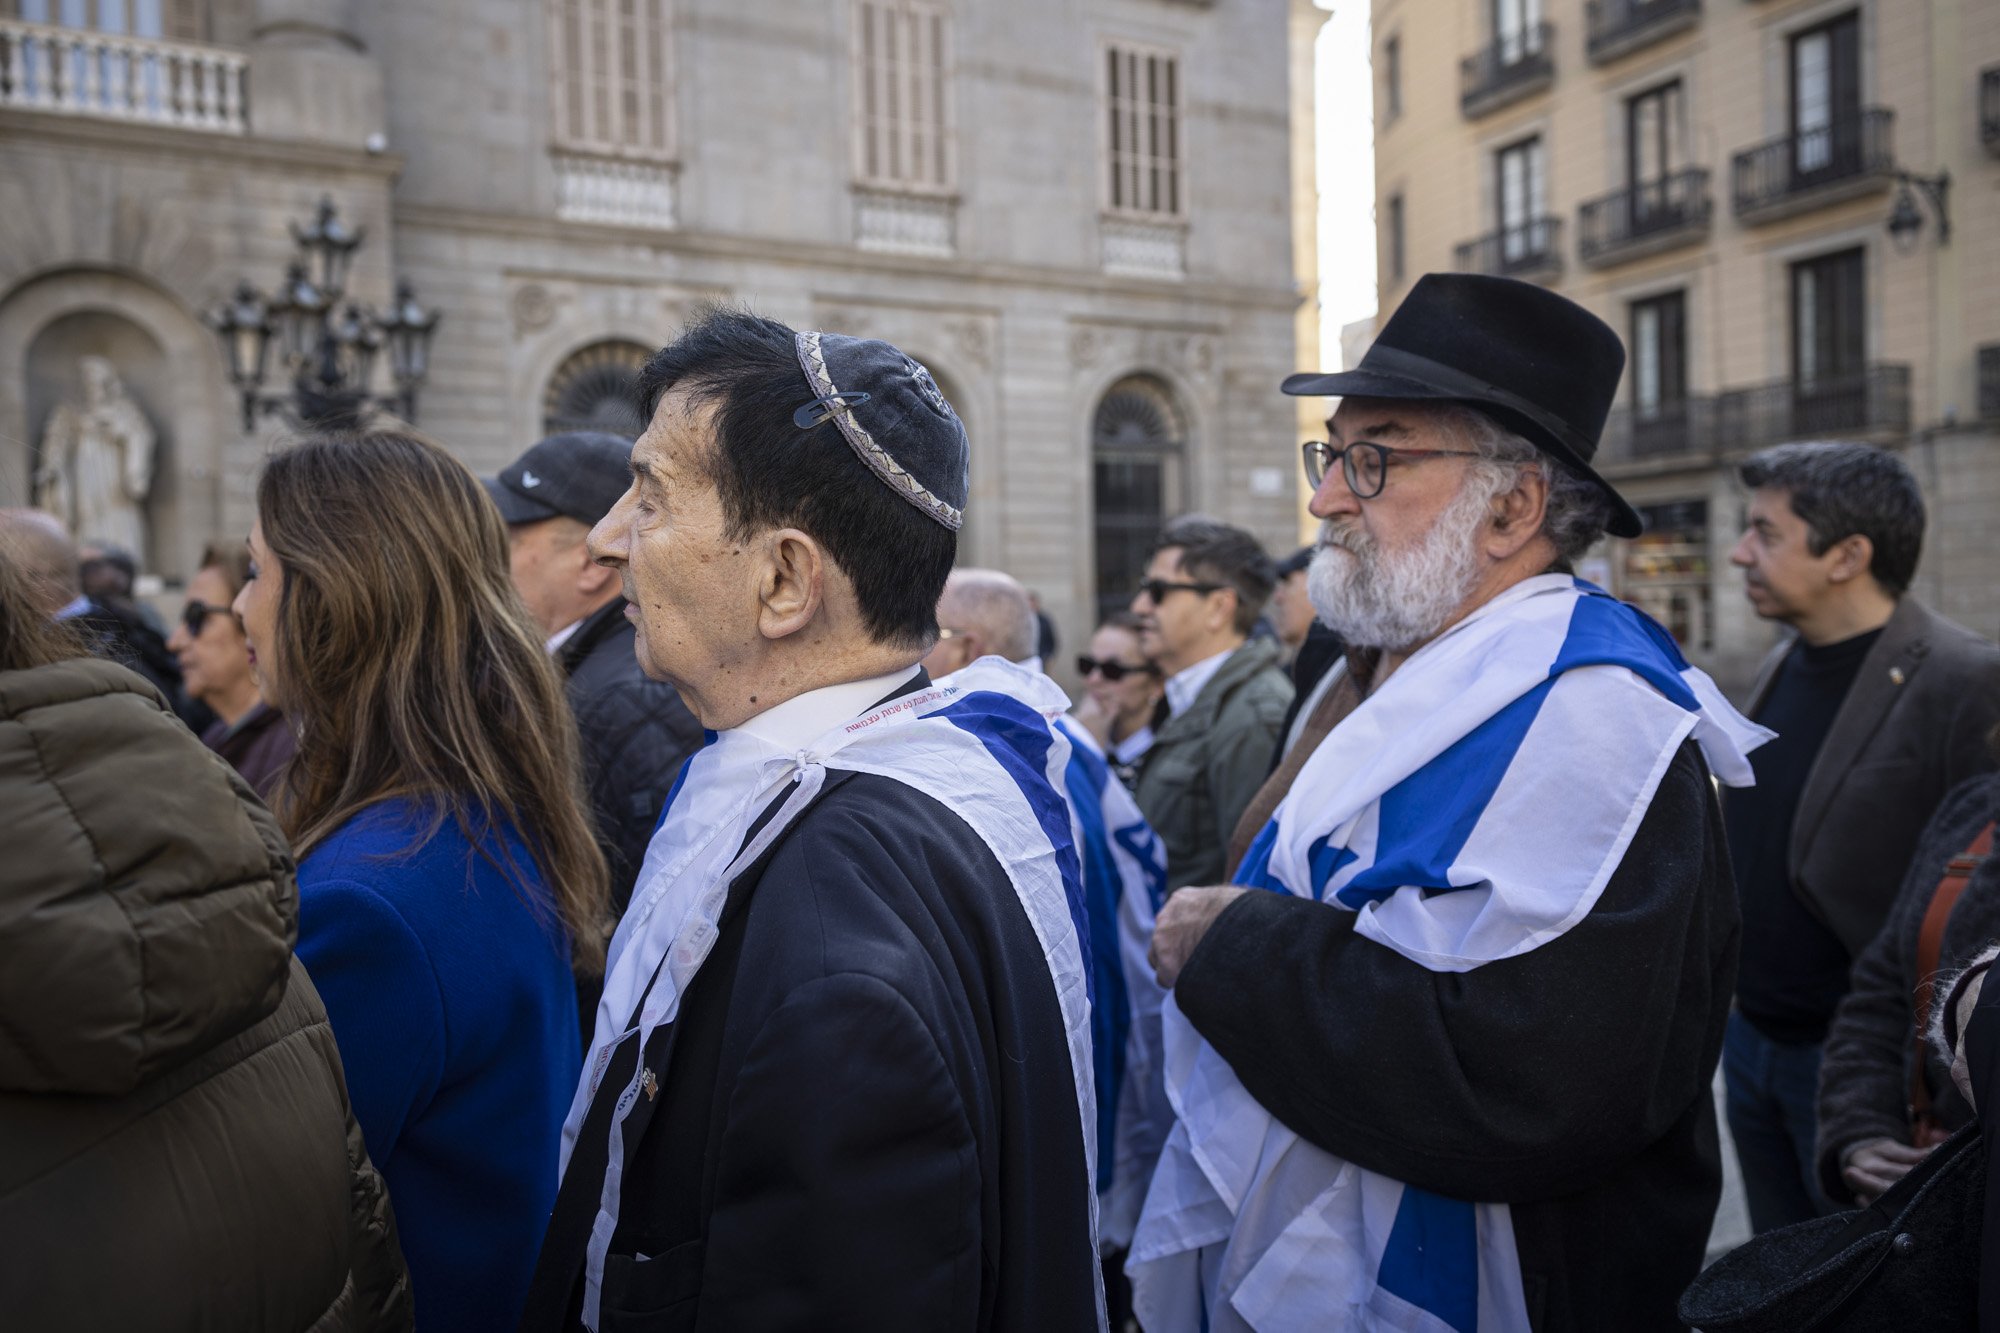 La embajada de Israel y los judíos barceloneses cargan contra Collboni por la ruptura de relaciones